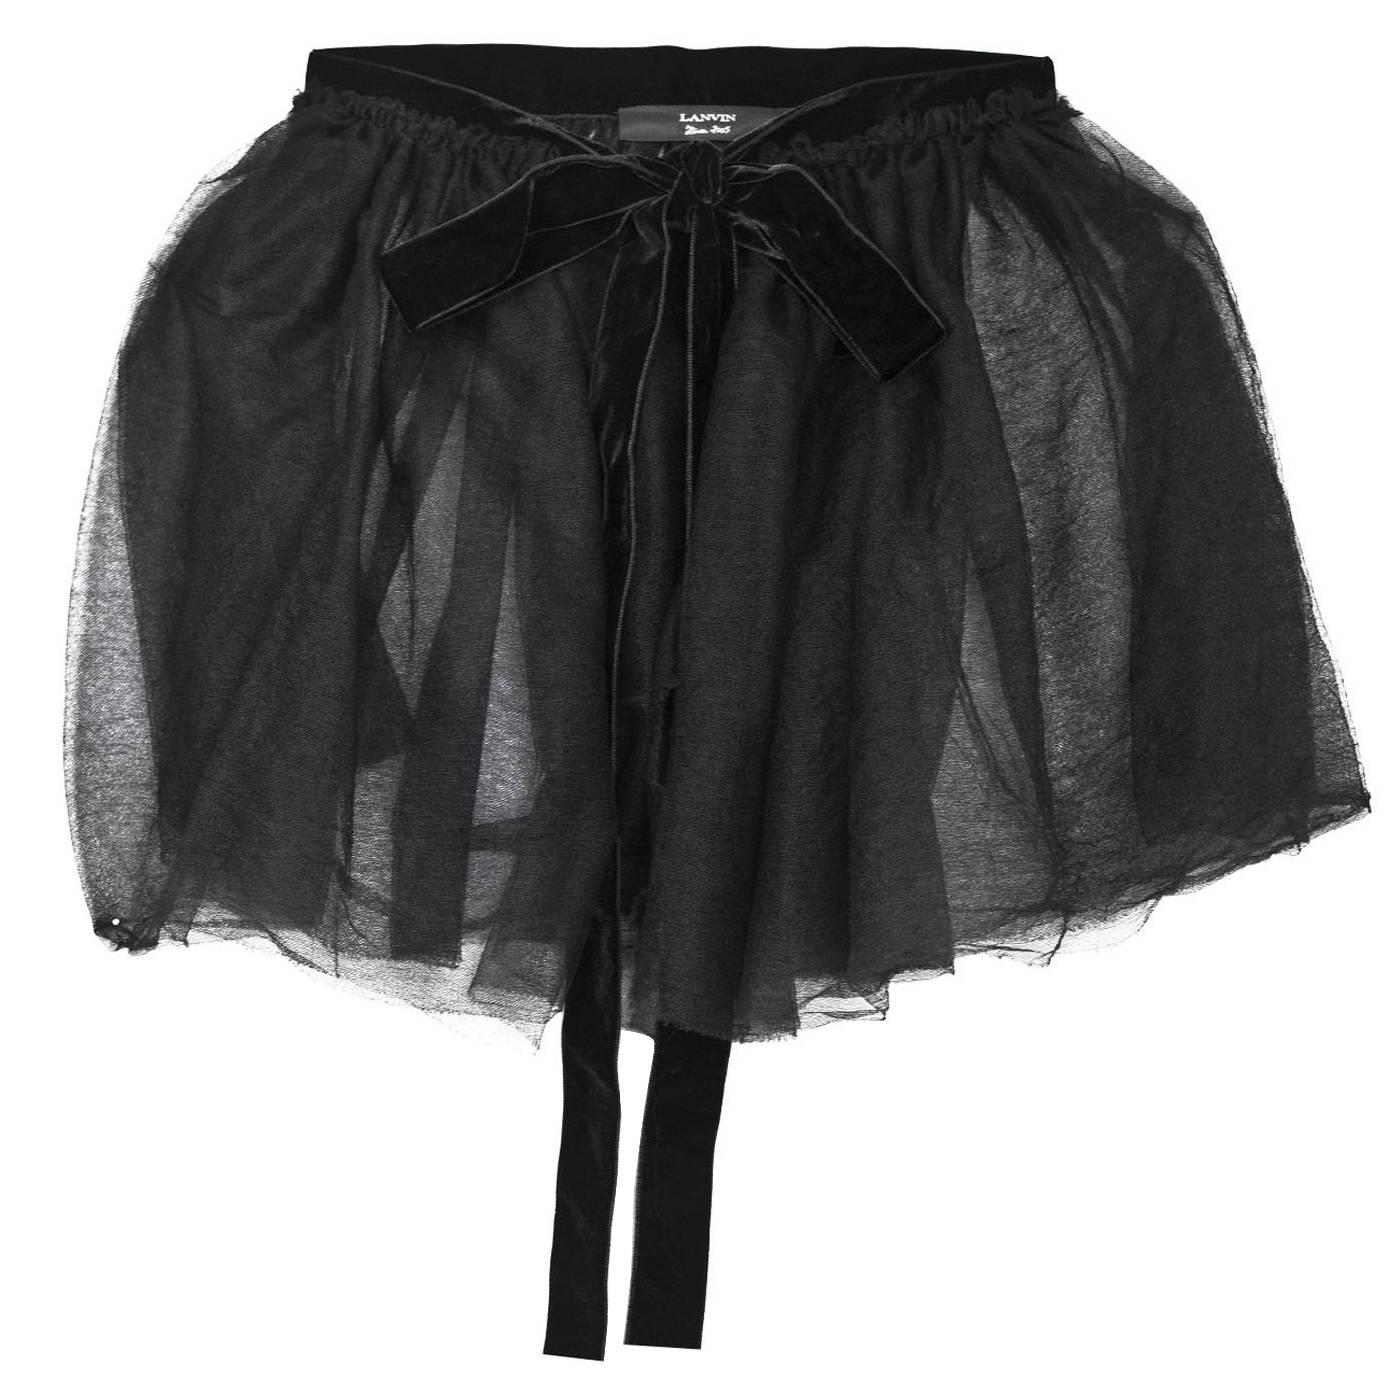 Lanvin Black Tulle Sheer Wrap Skirt